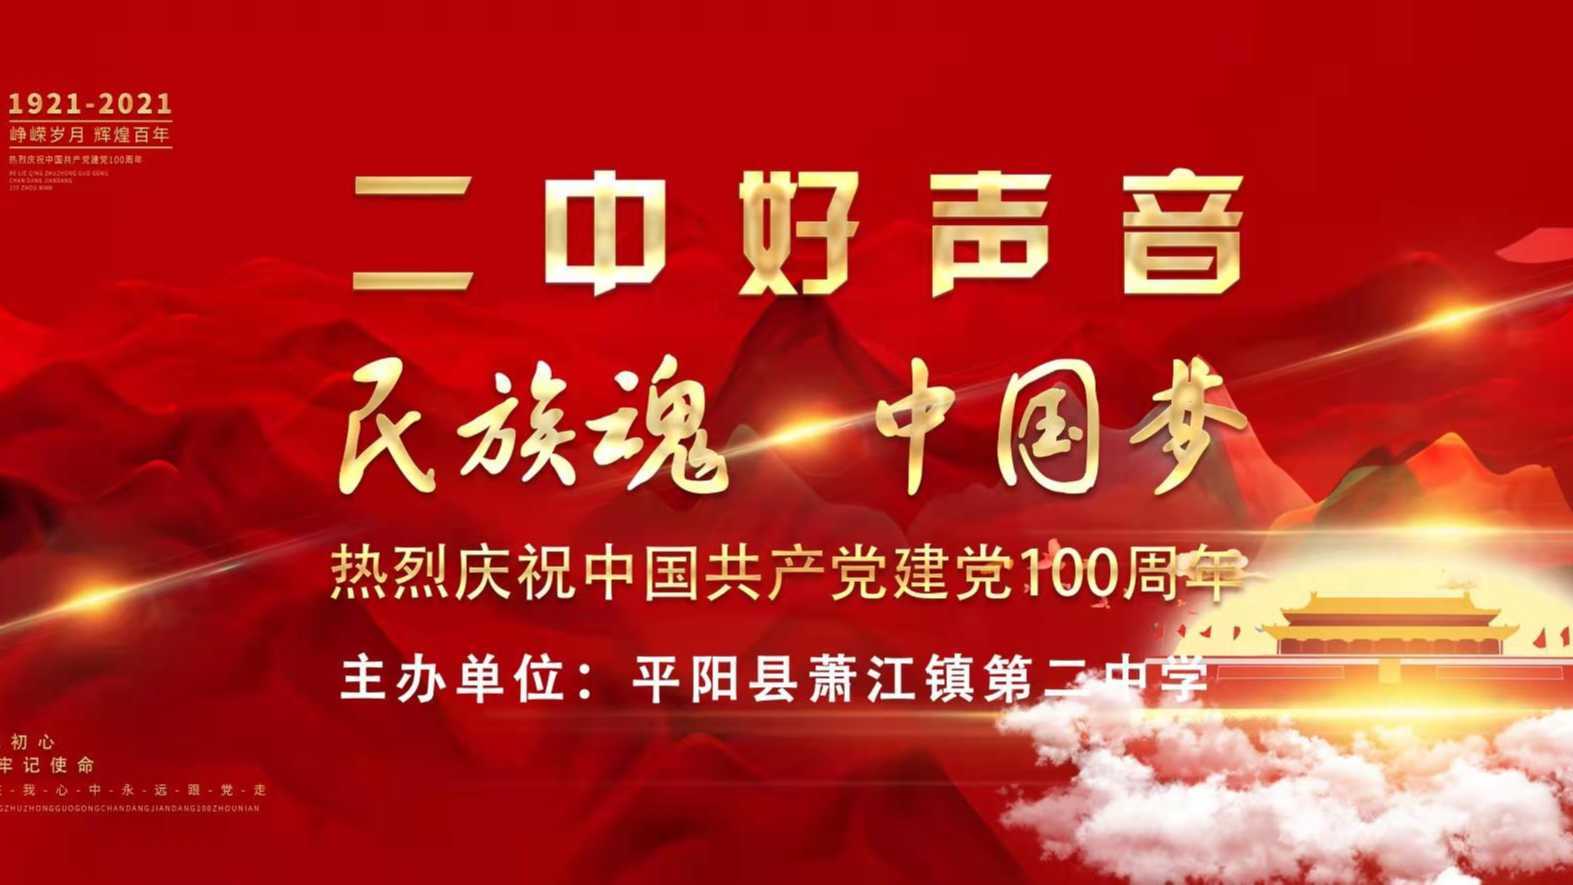 "民族魂 中国梦--二中好声音"萧江二中庆祝建党100周年暨十佳歌手大奖赛